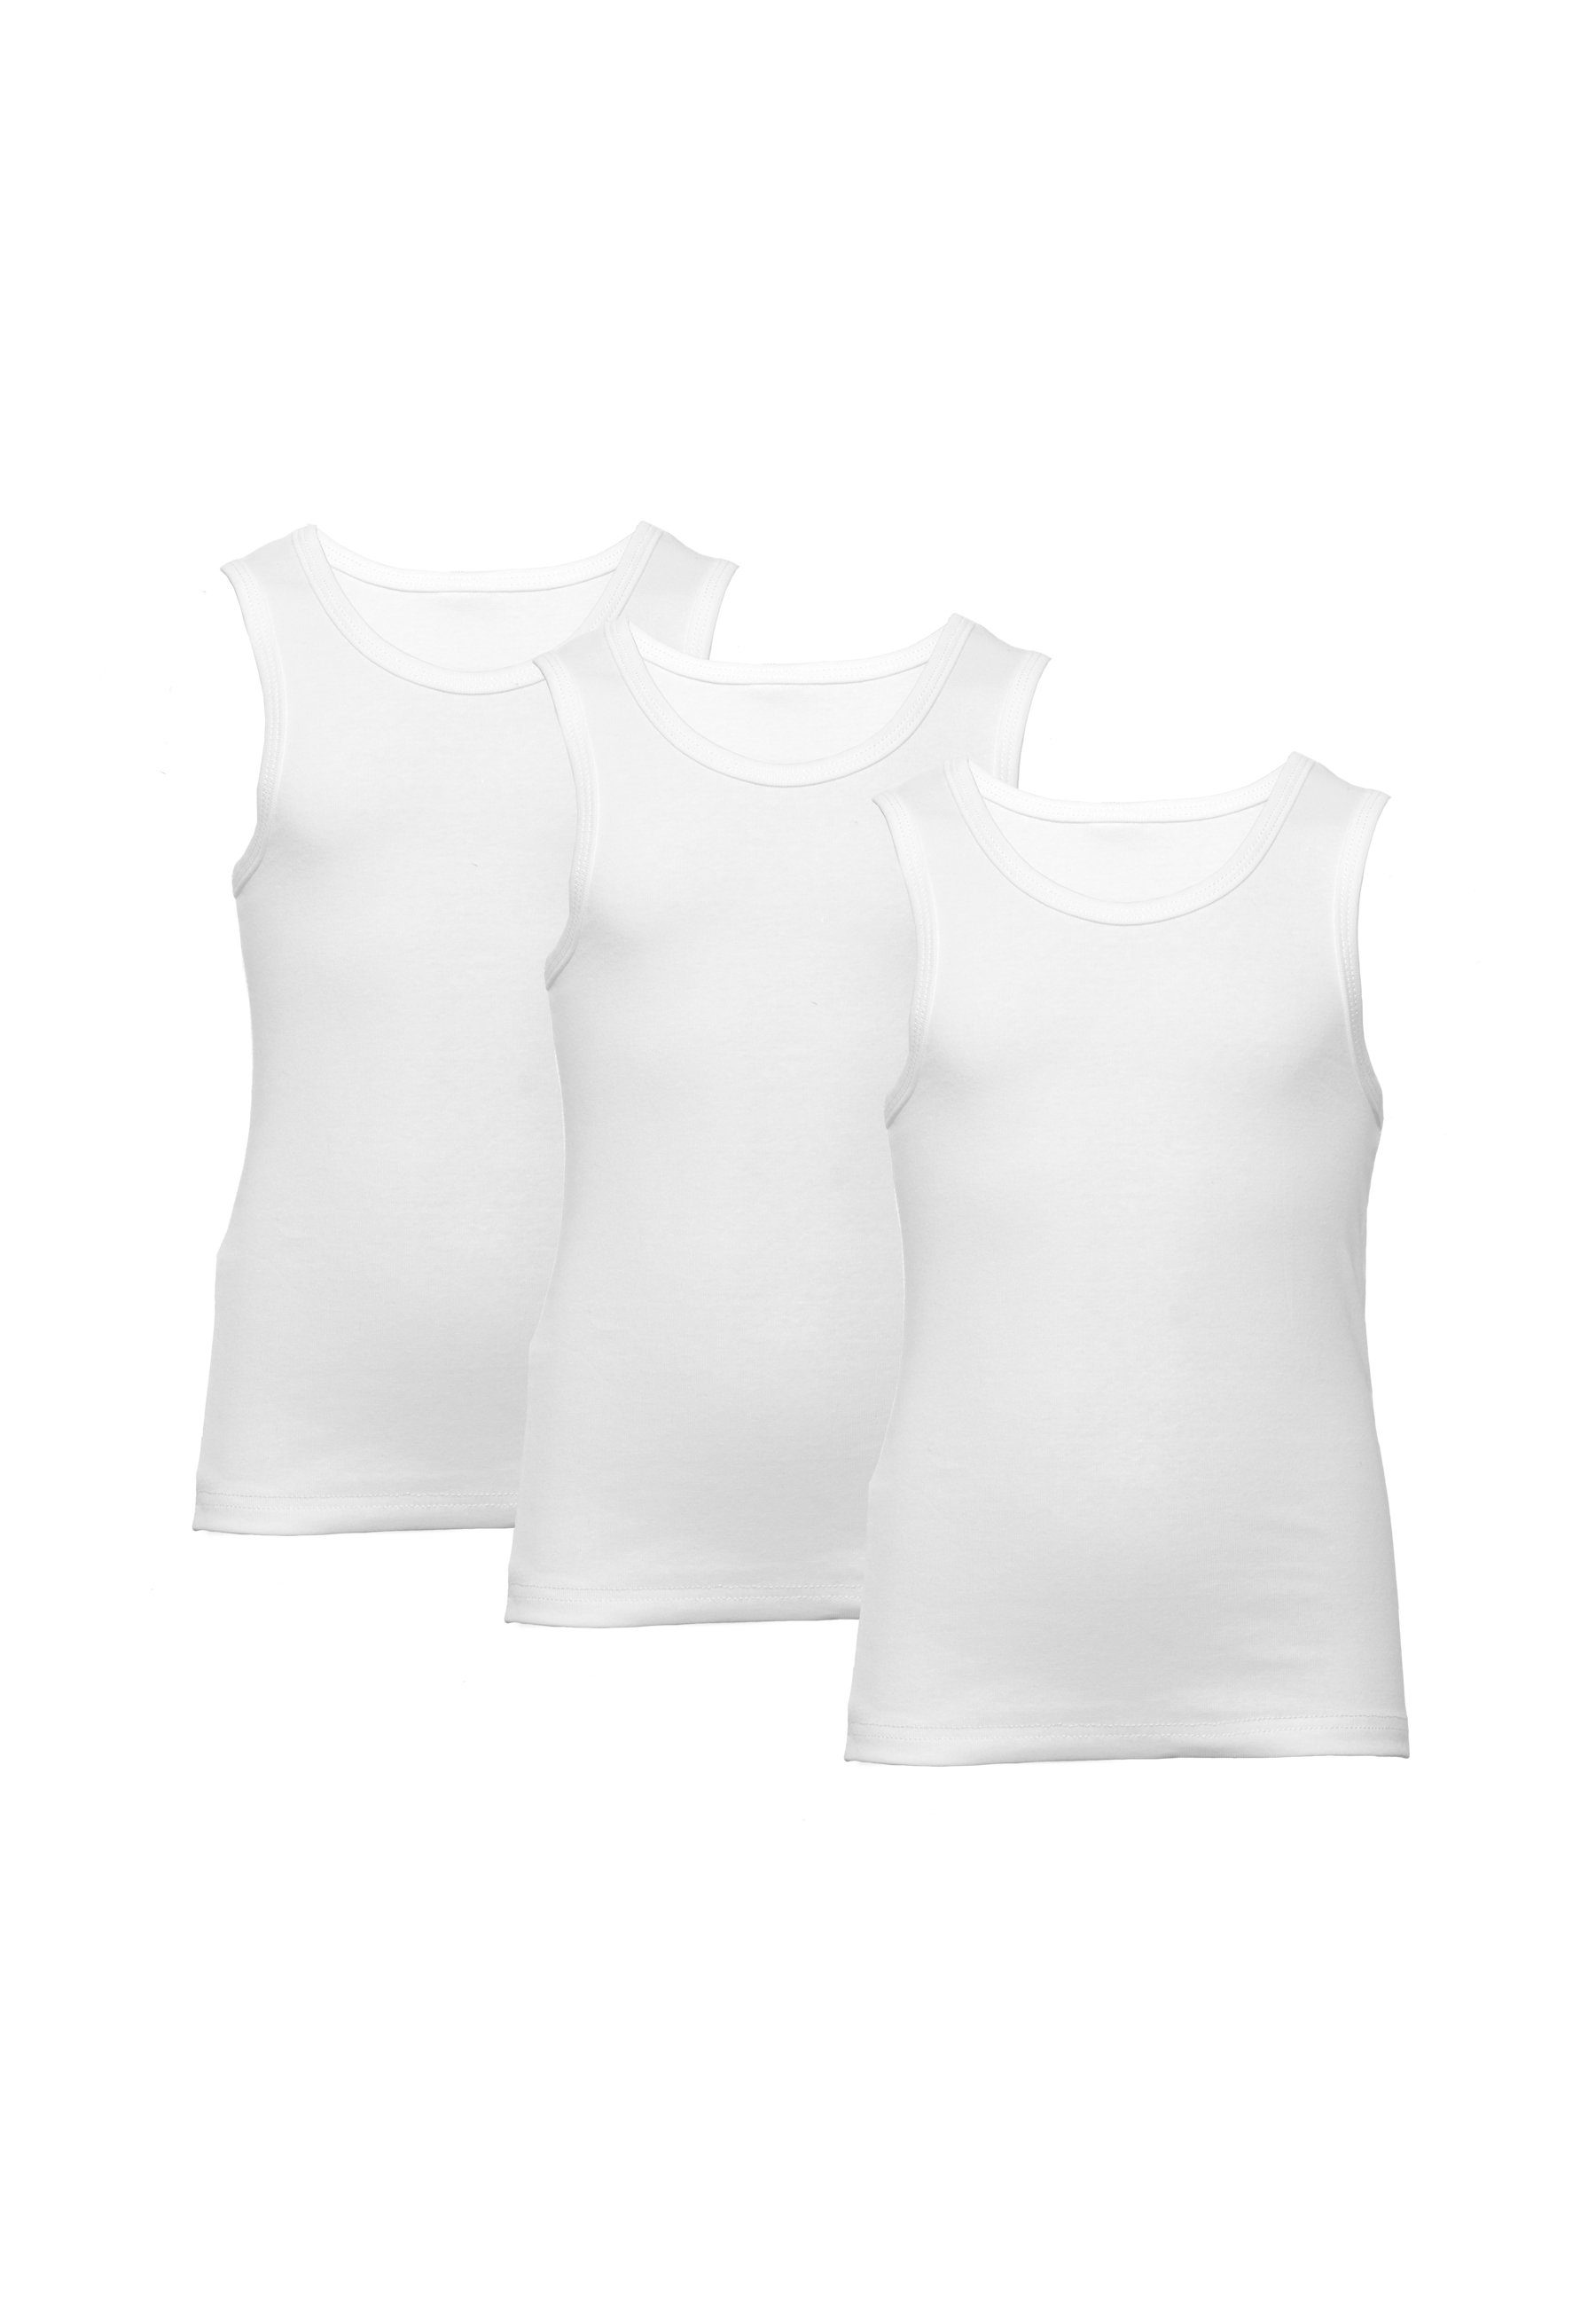 CARBURANT Unterhemd aus für reiner Weiß 3er-Pack, Baumwolle Unterhemden Jungen